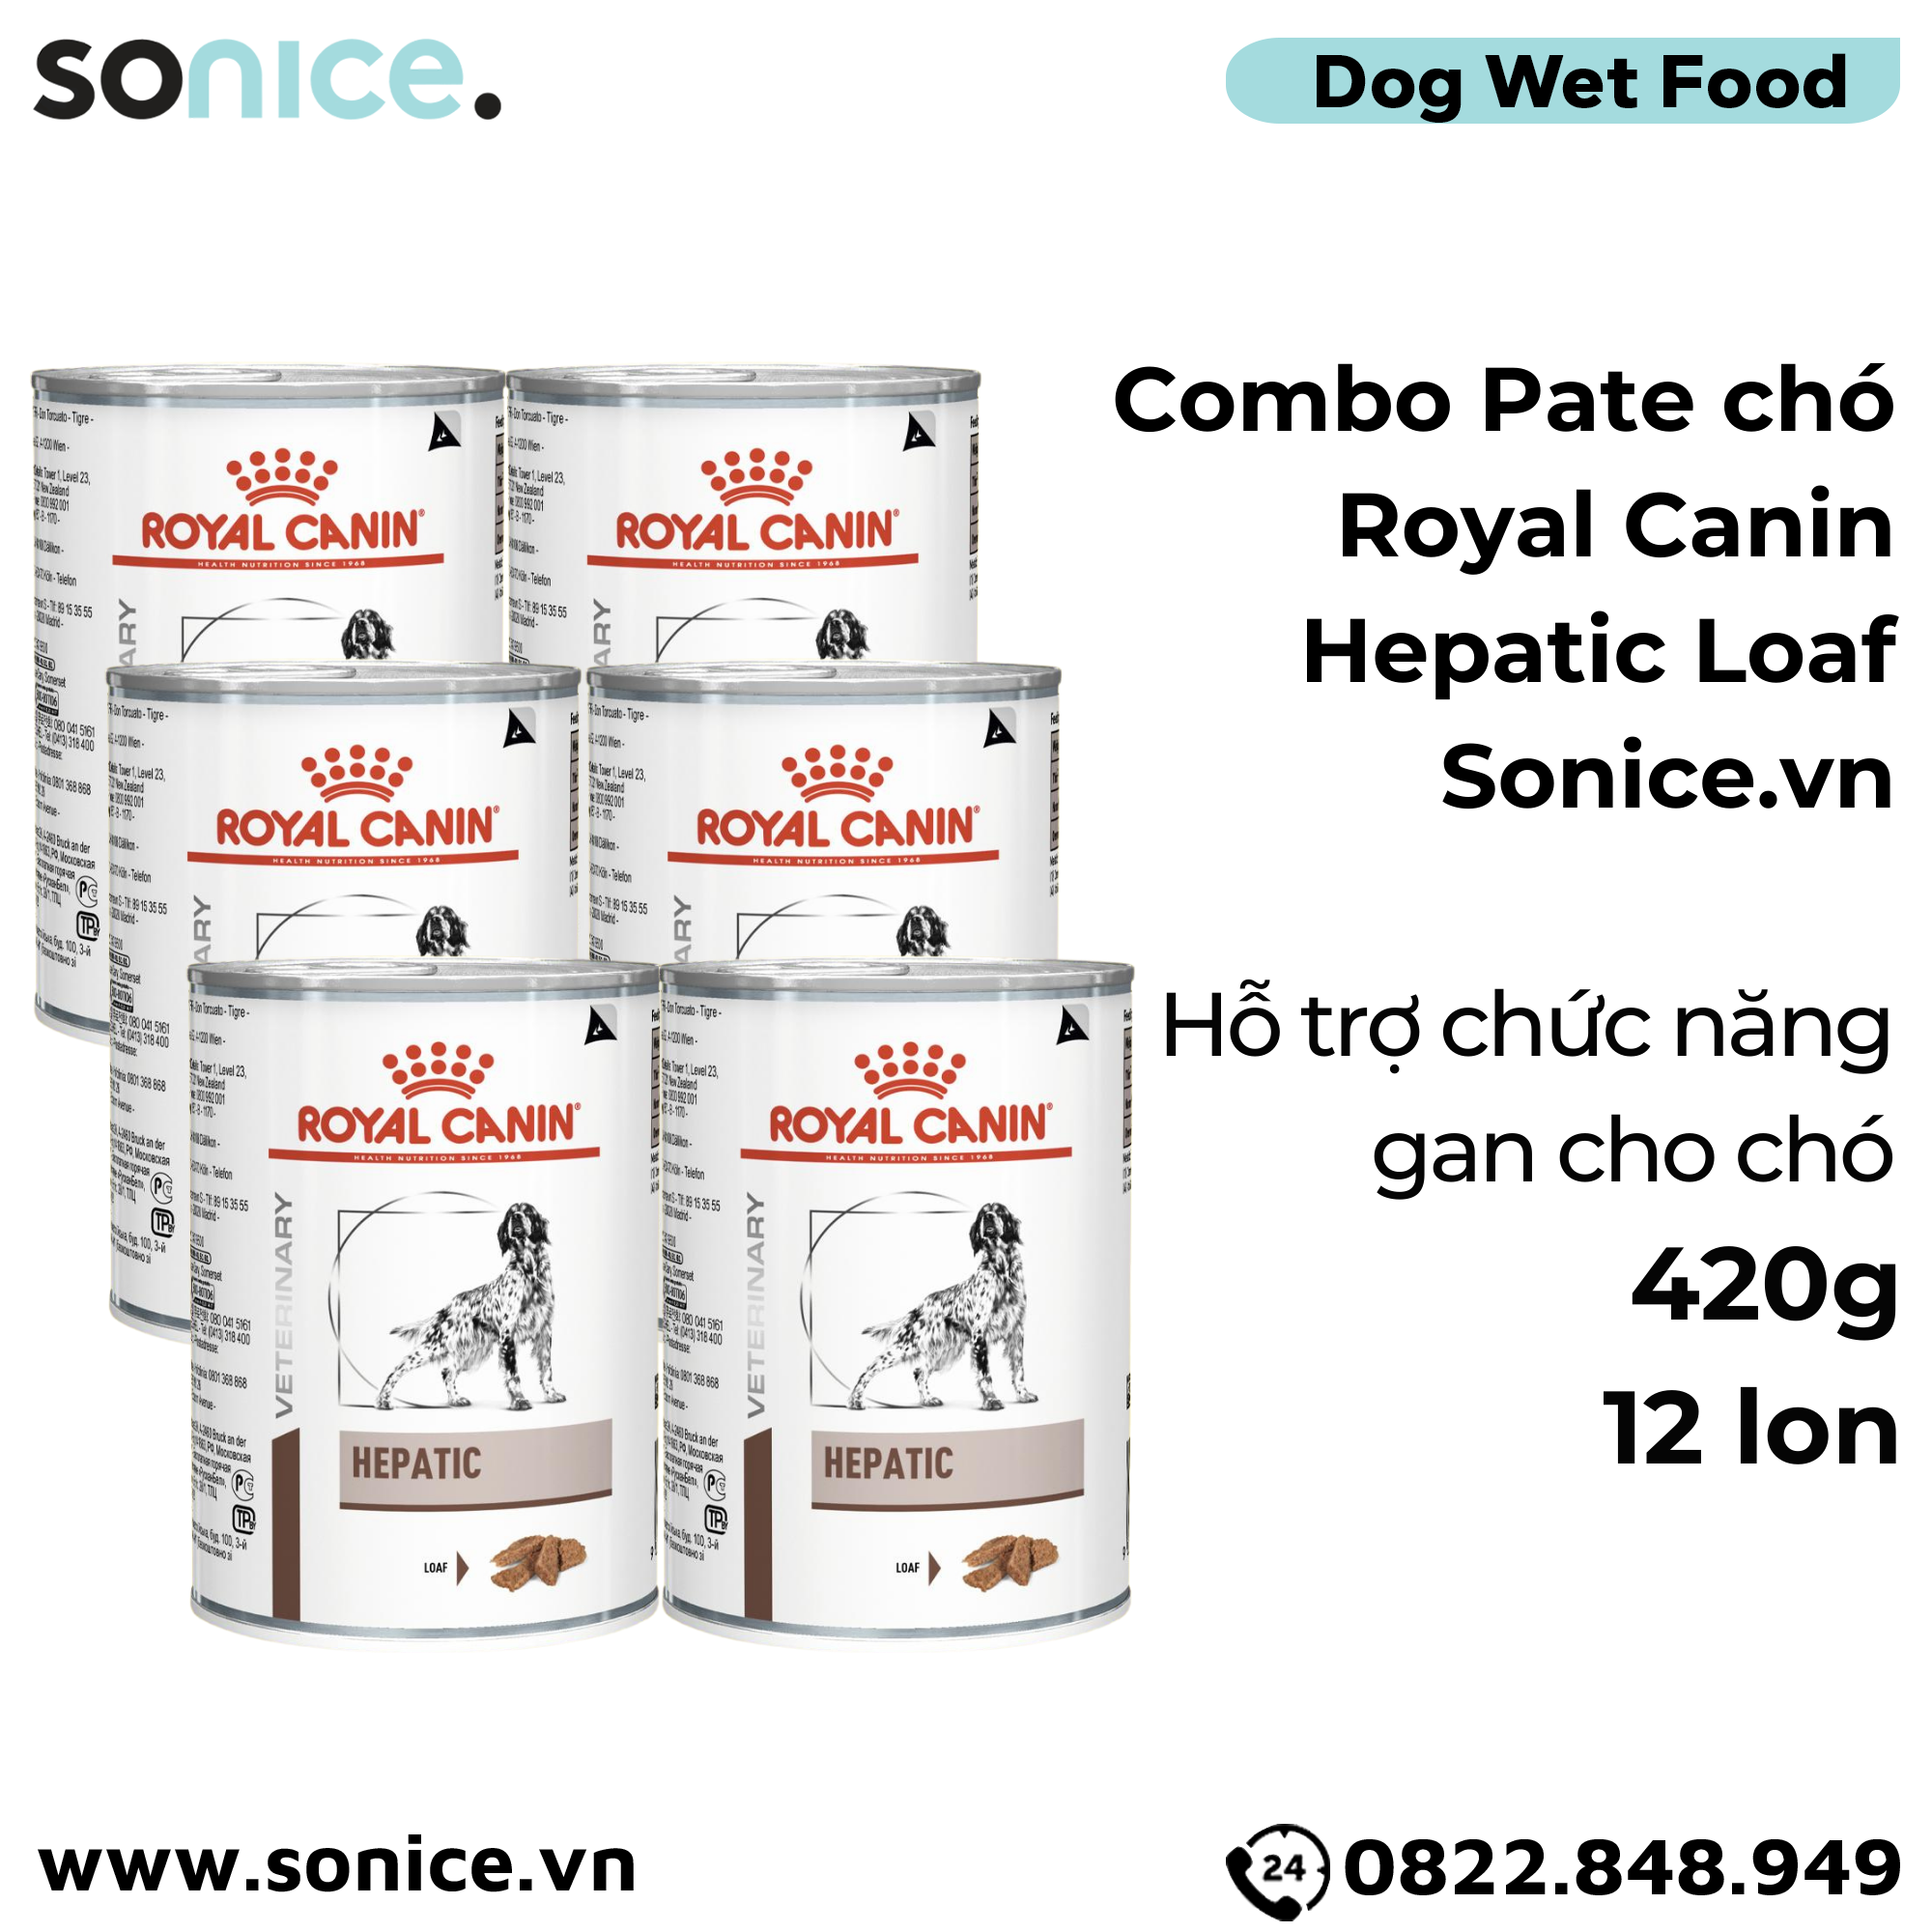  Combo Pate chó Royal Canin Hepatic Loaf 420g - 12 lon - Hỗ trợ chức năng gan SONICE. 